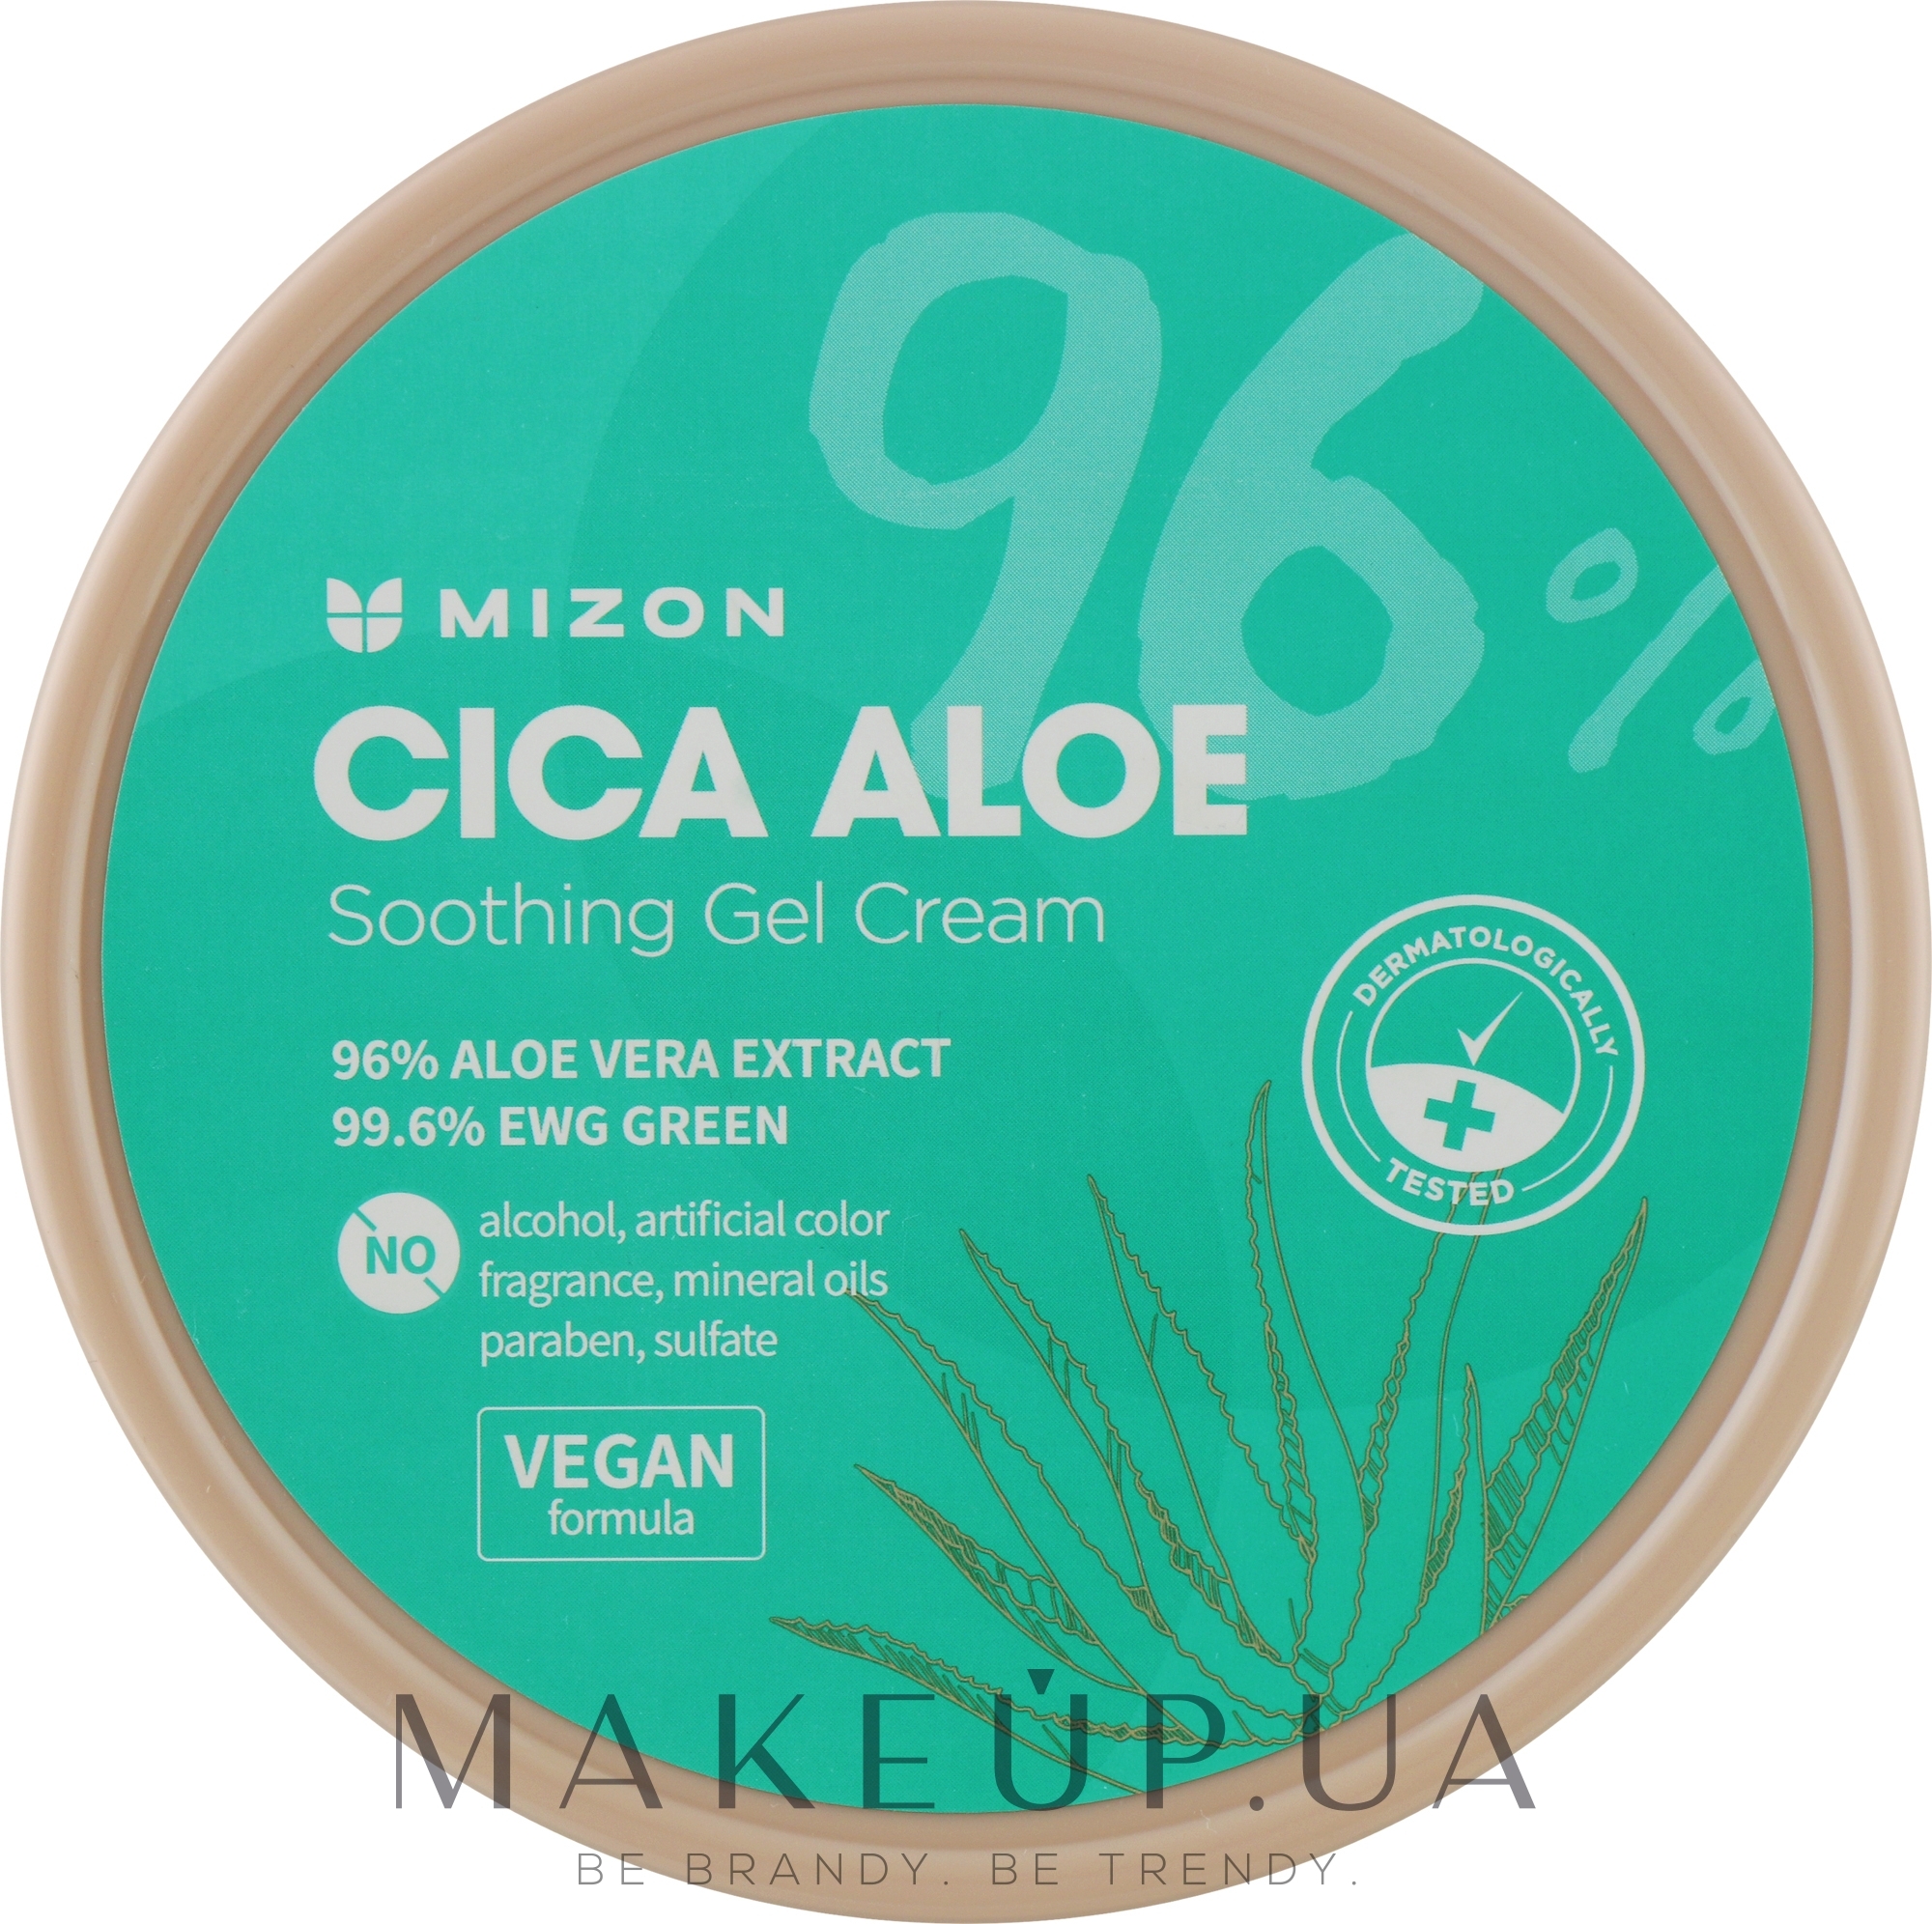 Успокаивающий гель-крем для лица и тела с алоэ - Mizon Cica Aloe 96% Soothing Gel Cream — фото 300g